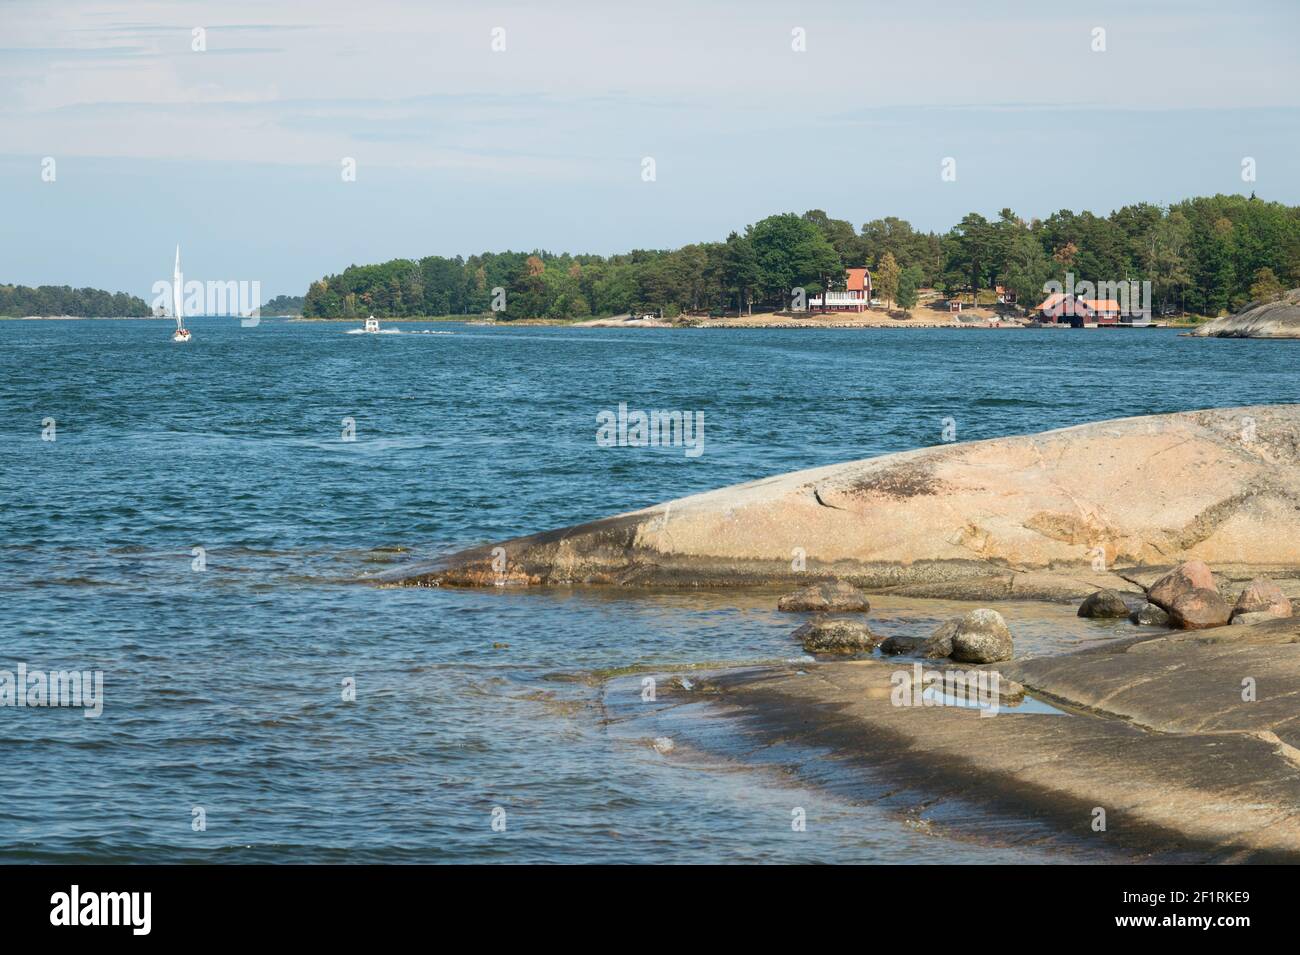 Finnhamn in Stockholm Archipelago, Sweden. Stock Photo